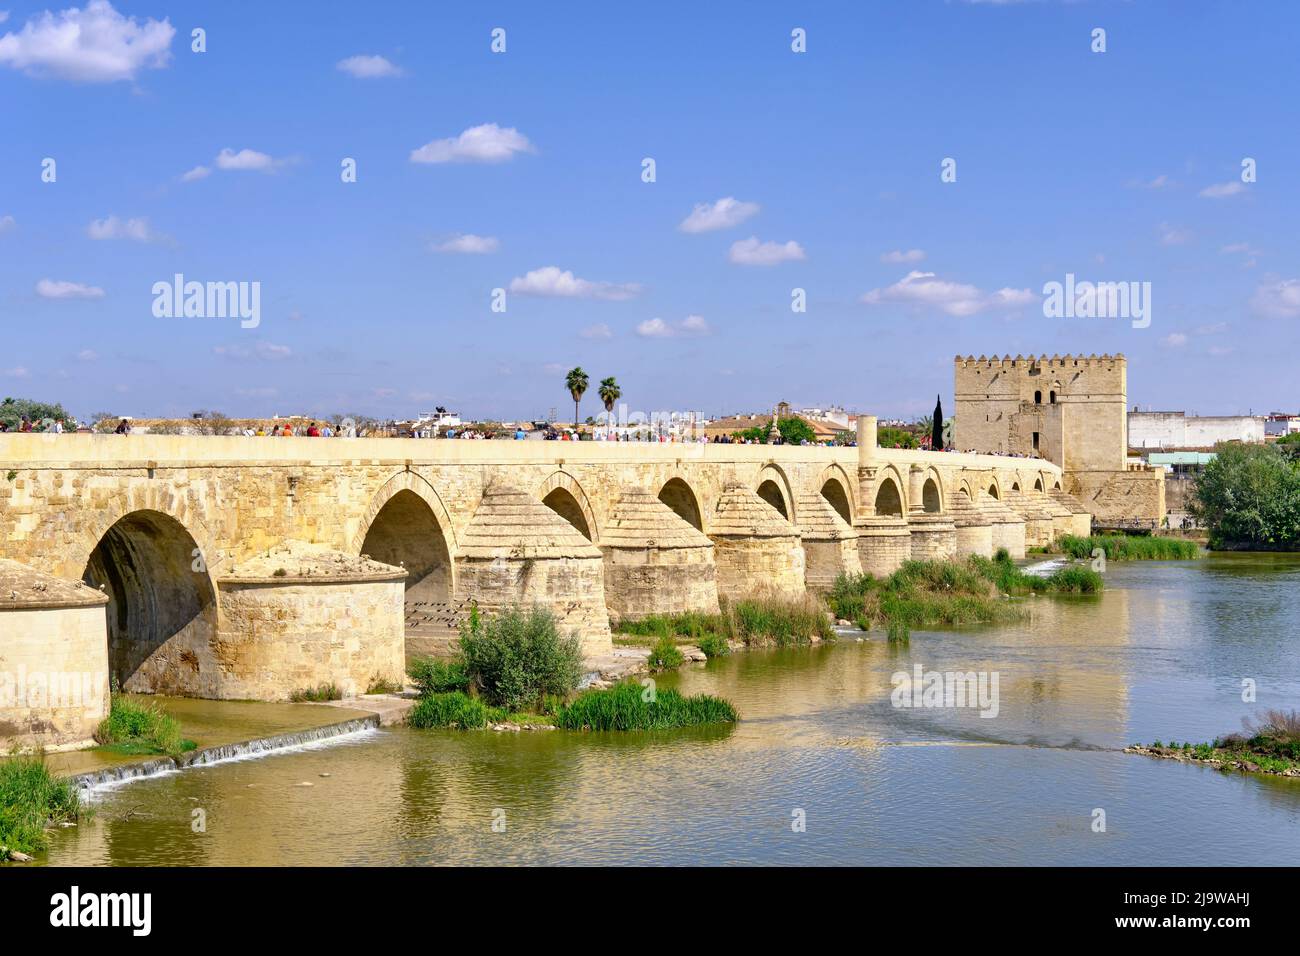 Die römische Brücke (Puente Romano) über dem Guadalquivir-Fluss und der Calahorra-Turm, ein befestigtes Tor. Cordoba ist ein UNESCO-Weltkulturerbe. Andalusien, Stockfoto